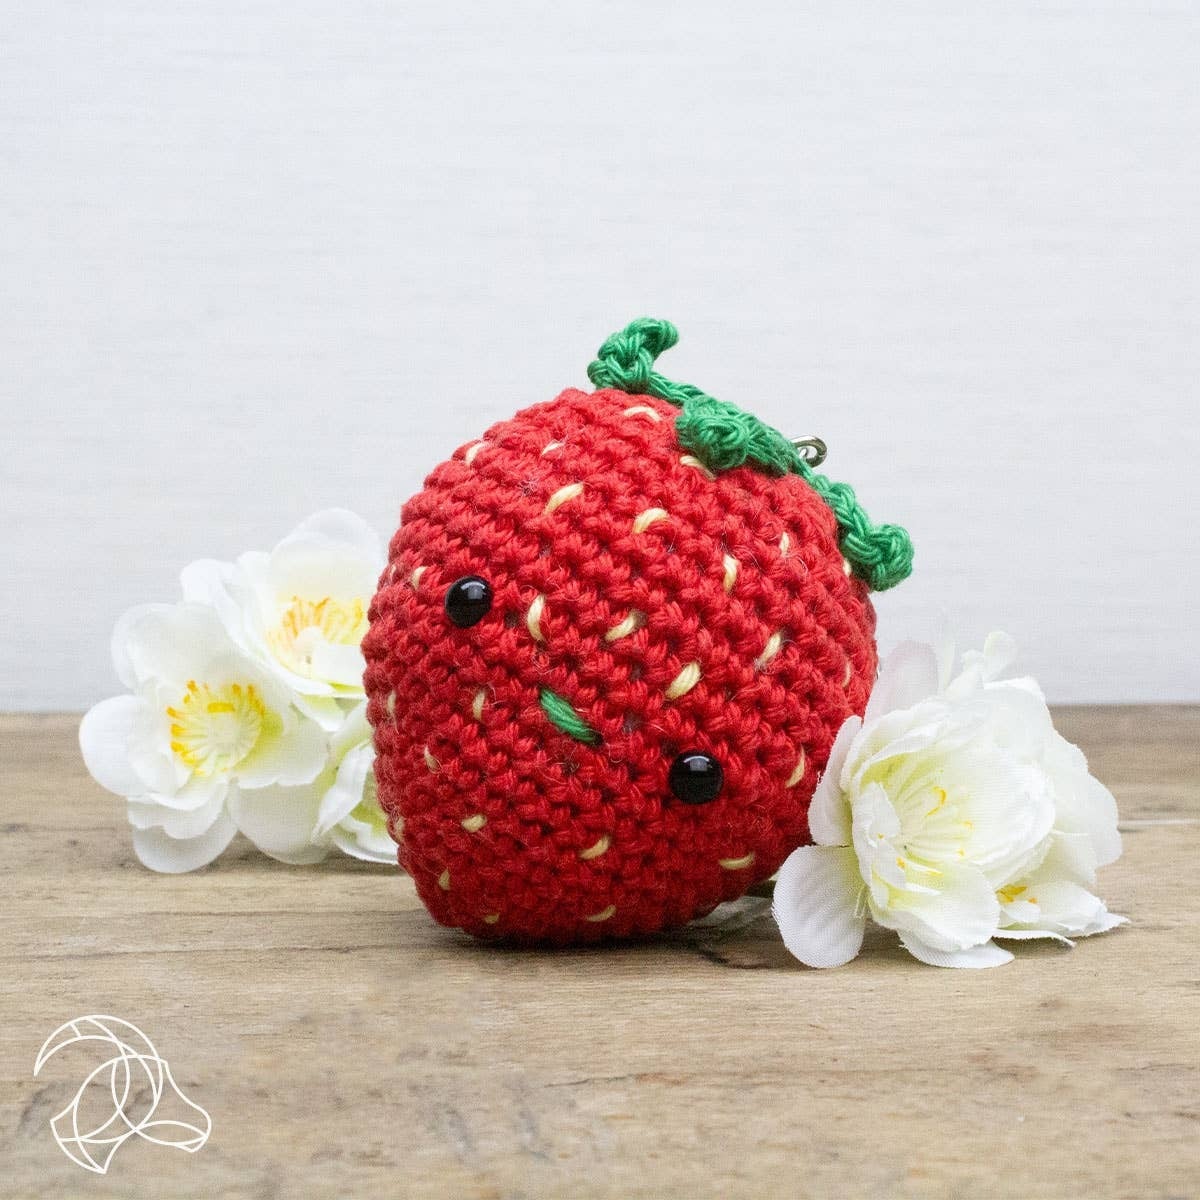 Strawberry crochet bag |Crochet bag - YouTube